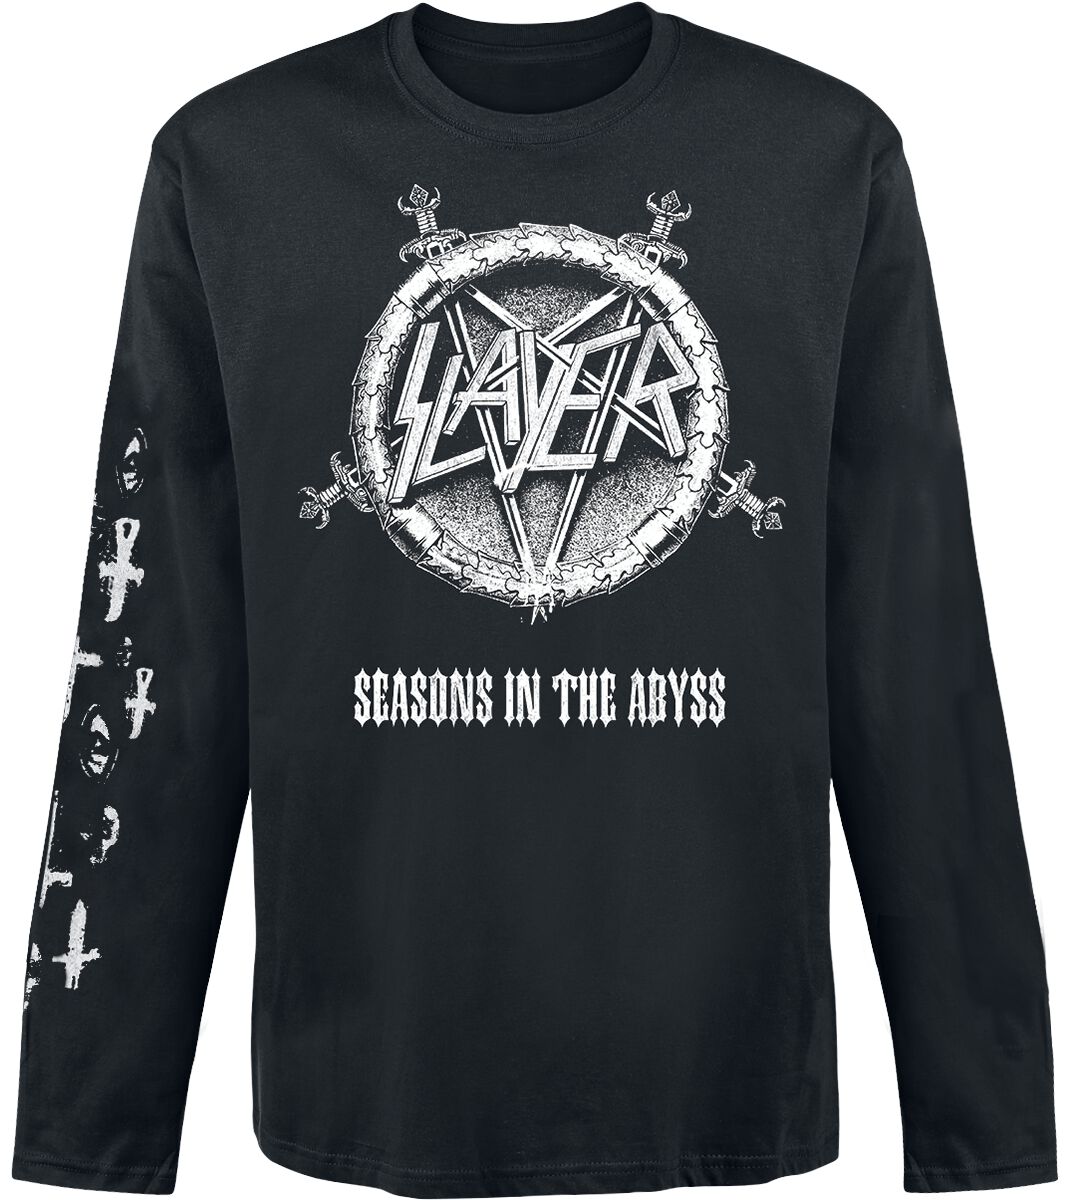 Slayer Langarmshirt - Seasons In The Abyss - S bis XXL - für Männer - Größe XXL - schwarz  - Lizenziertes Merchandise!